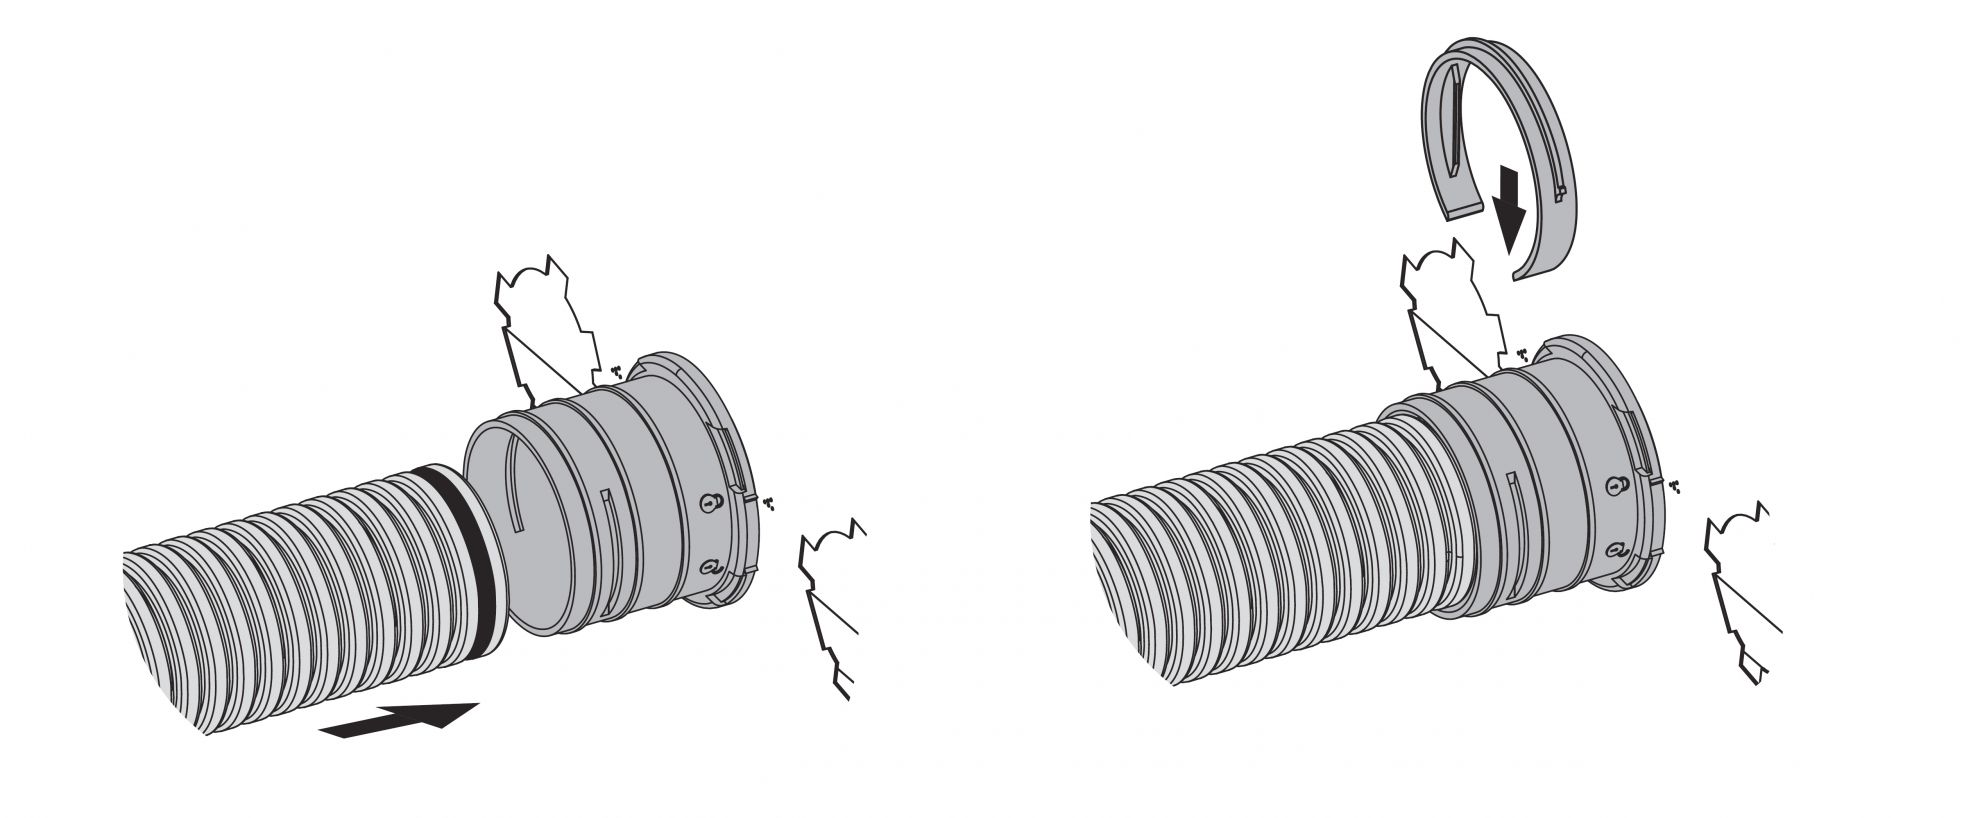 Skrzynka rozprężna służy do połączenia klasycznego kanału wentylacyjnego o średnicy 200 mm z kanałowym systemem wentylacyjnym Flexitech Ø 75 mm